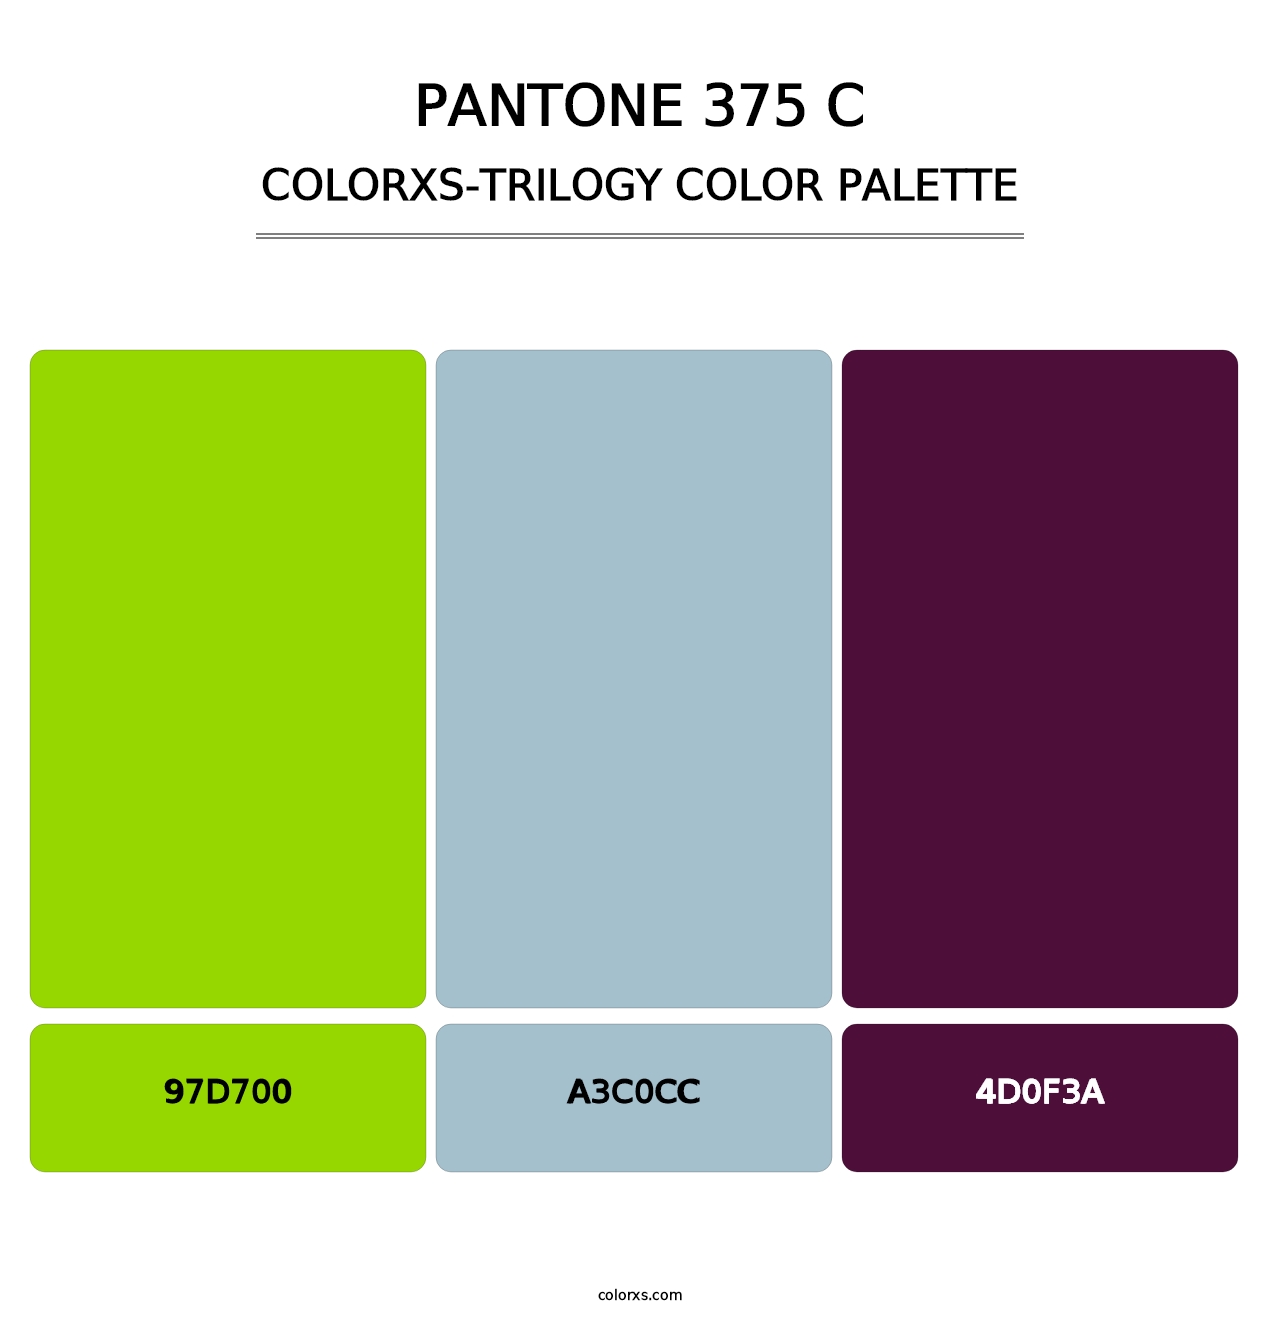 PANTONE 375 C - Colorxs Trilogy Palette